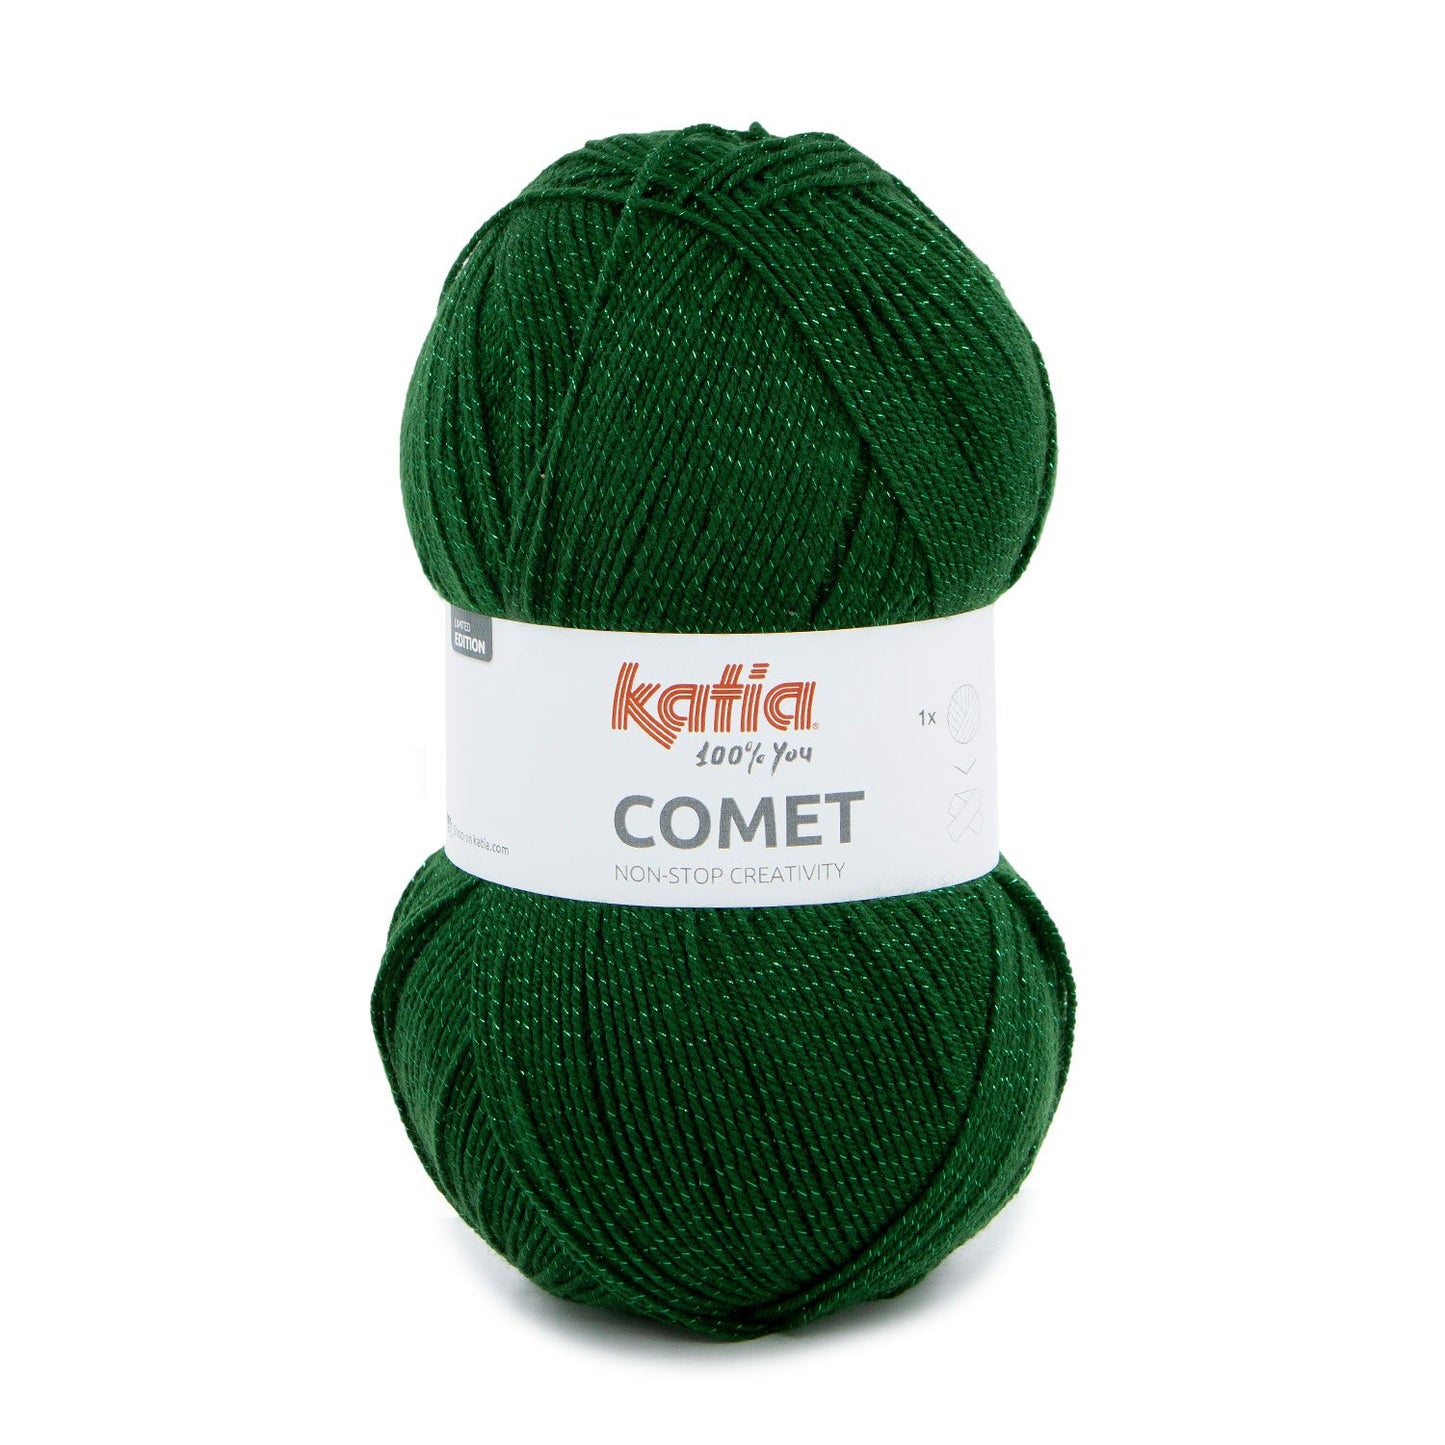 Katia - Comet